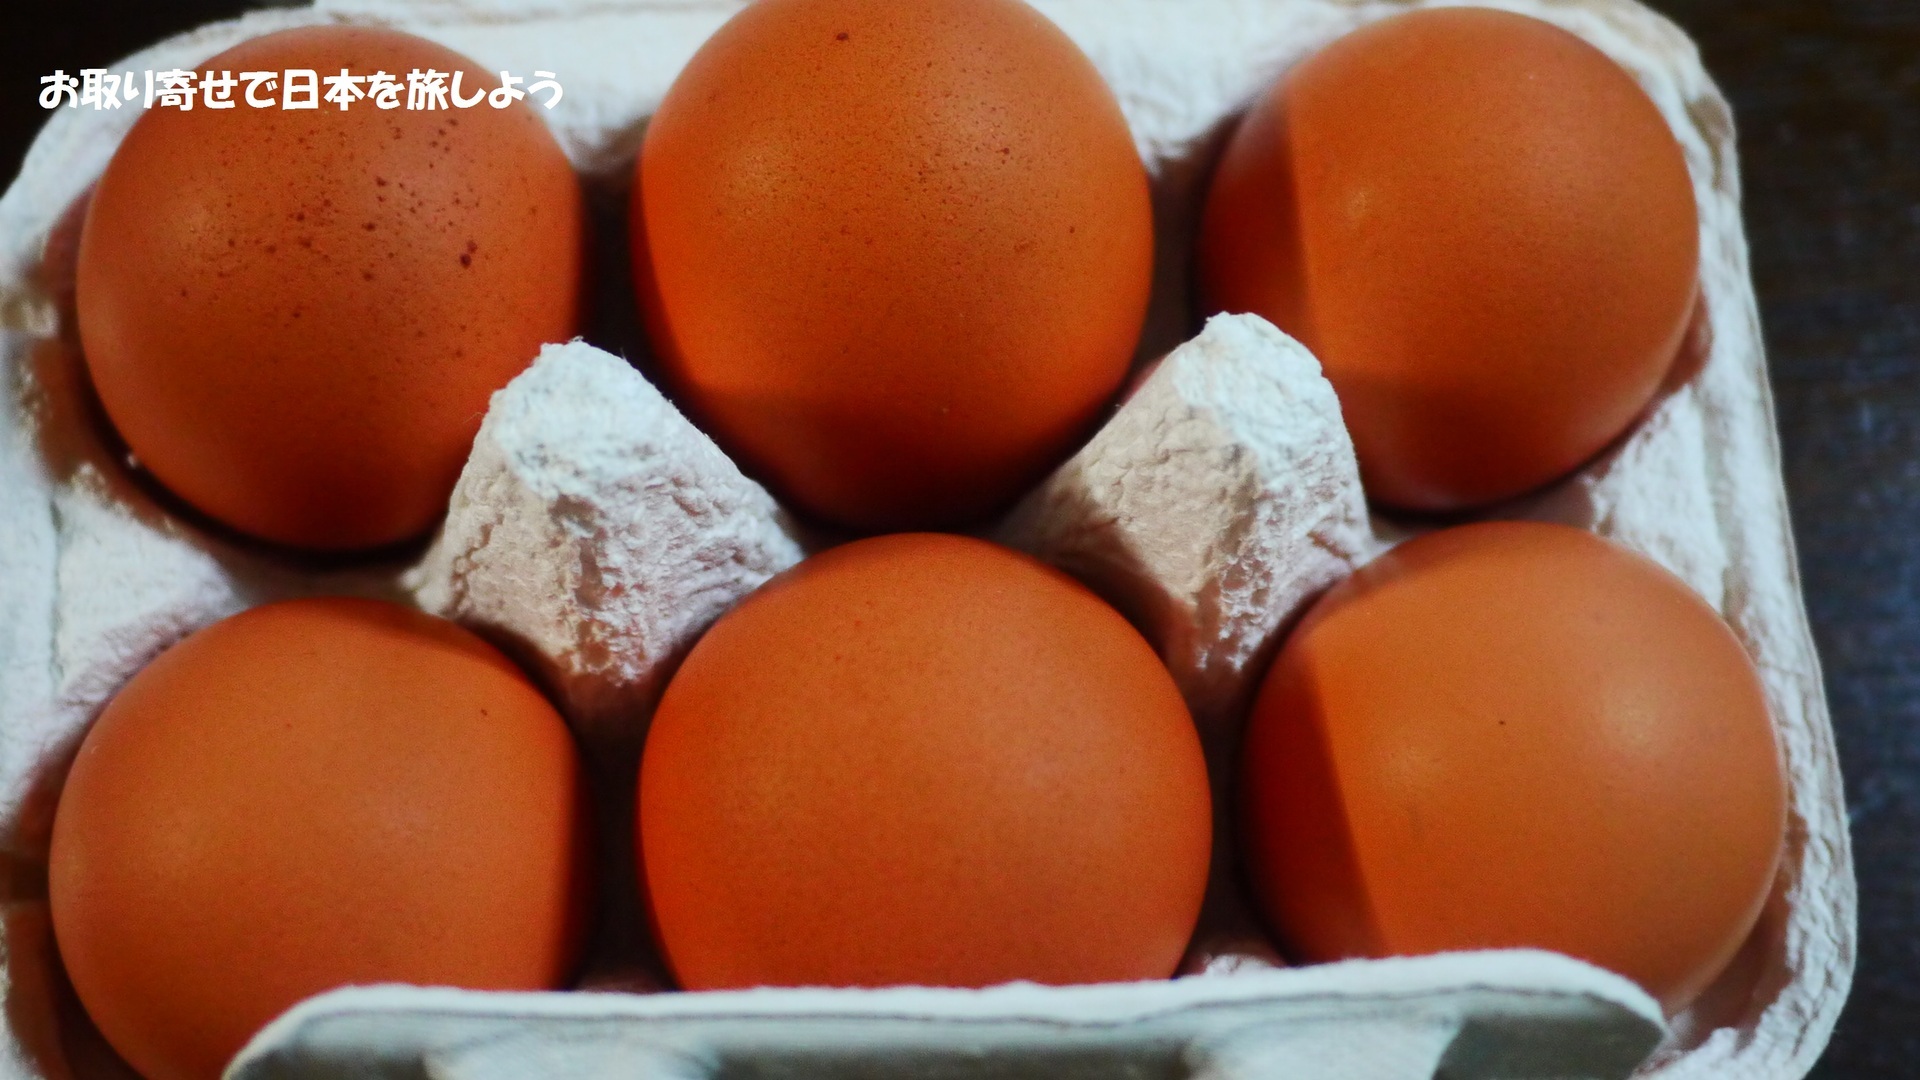 お取り寄せで日本を旅しよう 宮崎 自然とこだわりが生み出した本物の美味しさ 東養鶏場 えびの高原生まれの卵